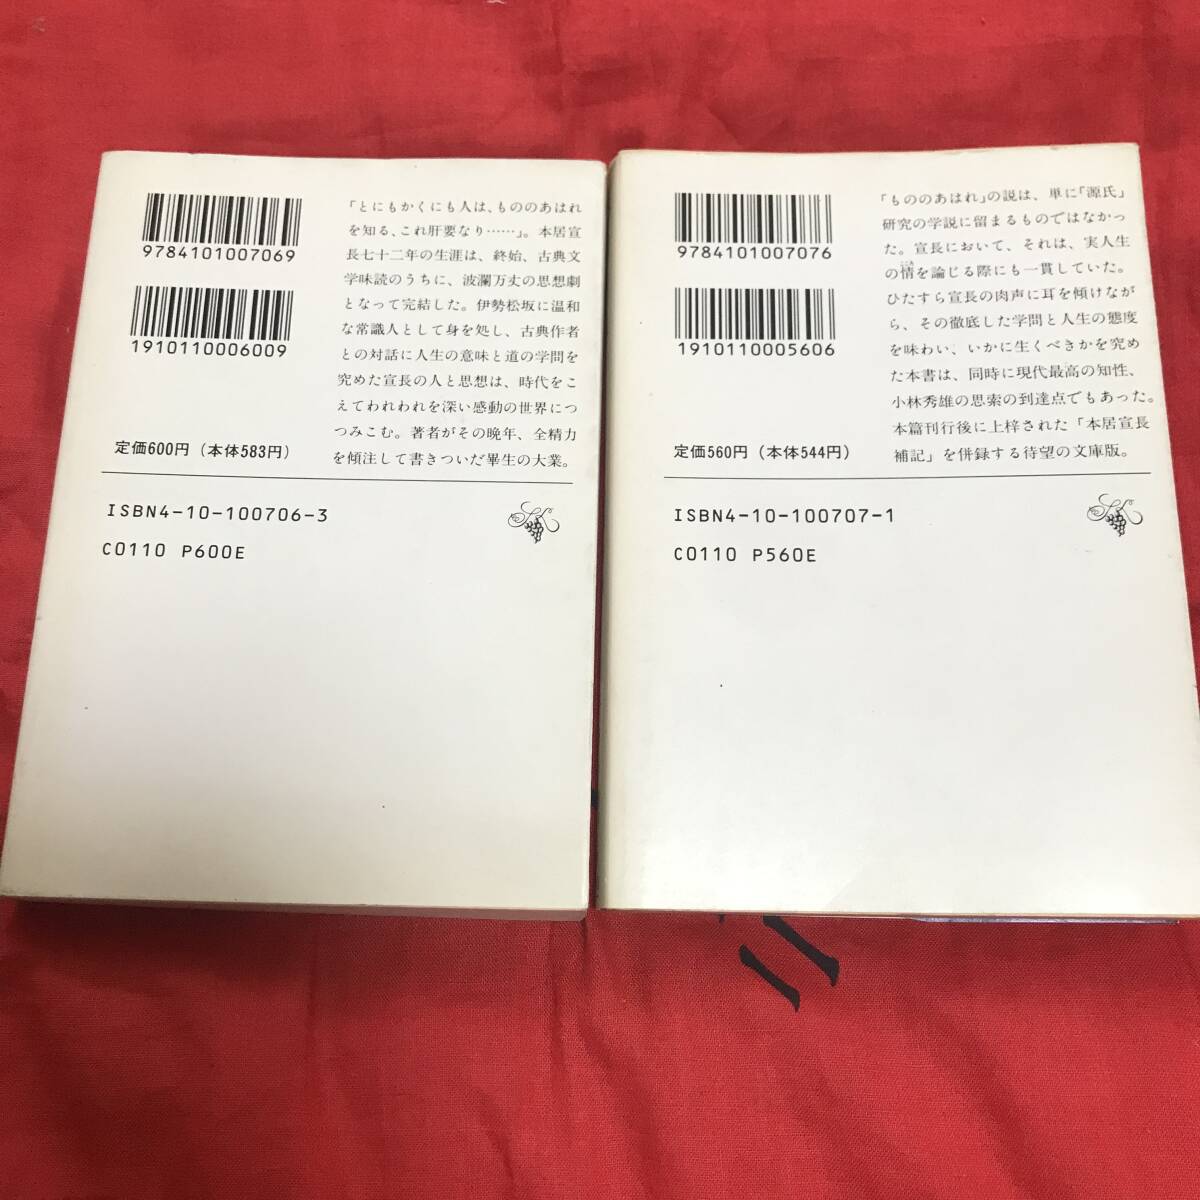  Shincho Bunko book@.. length all 2 volume 